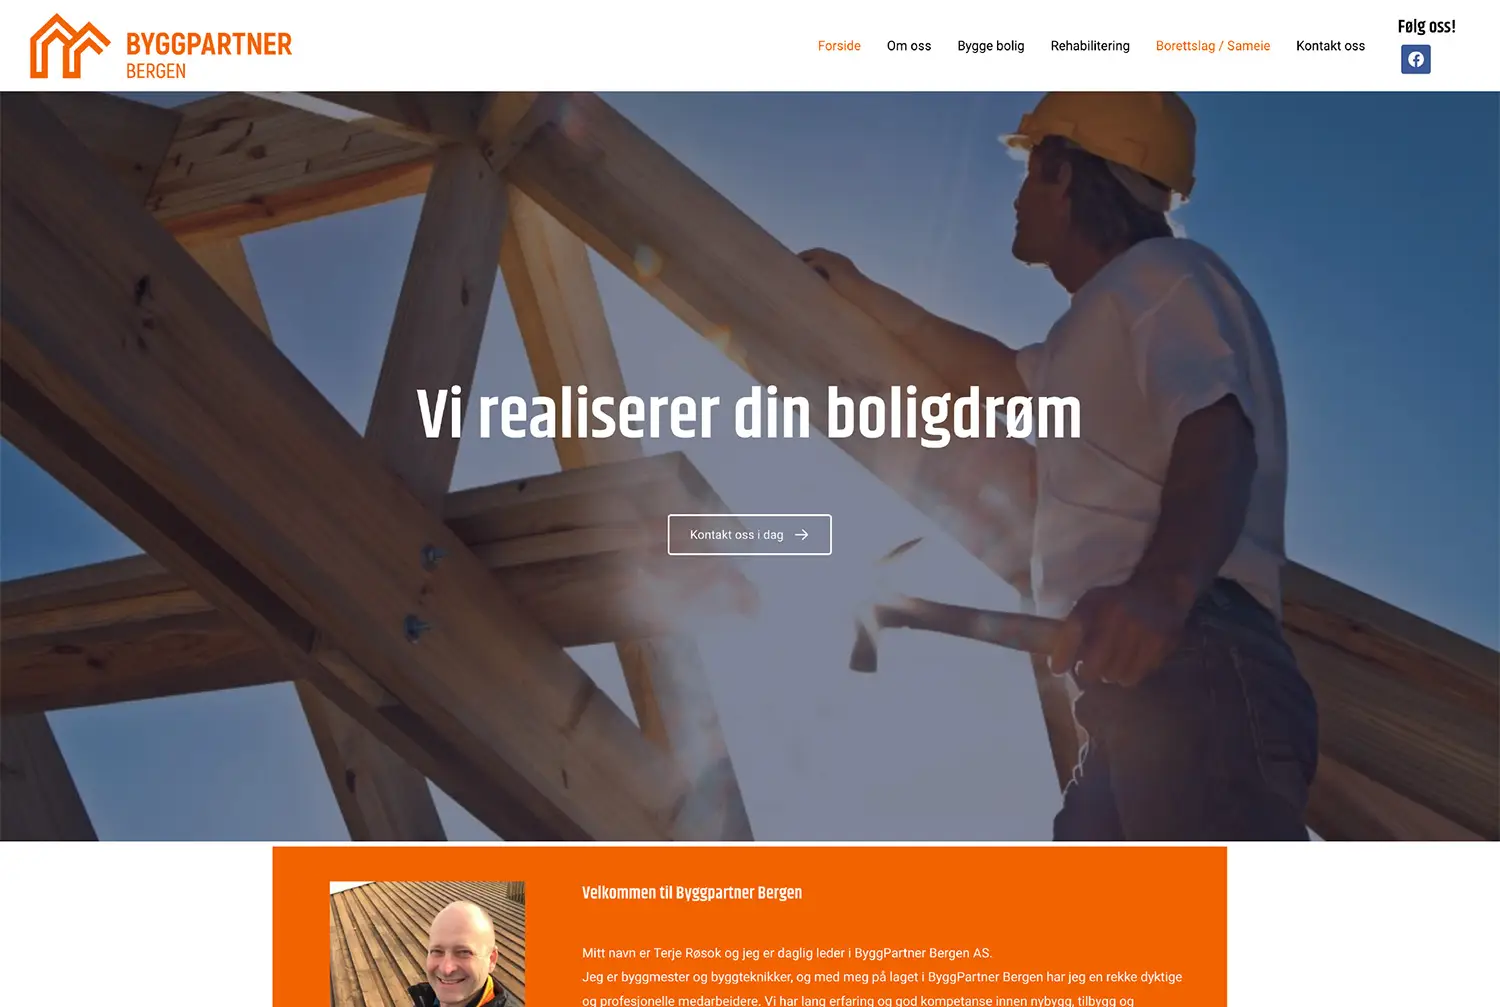 skjermdump av Byggpartner Bergens gamle nettside slik den så ut før oppdatering